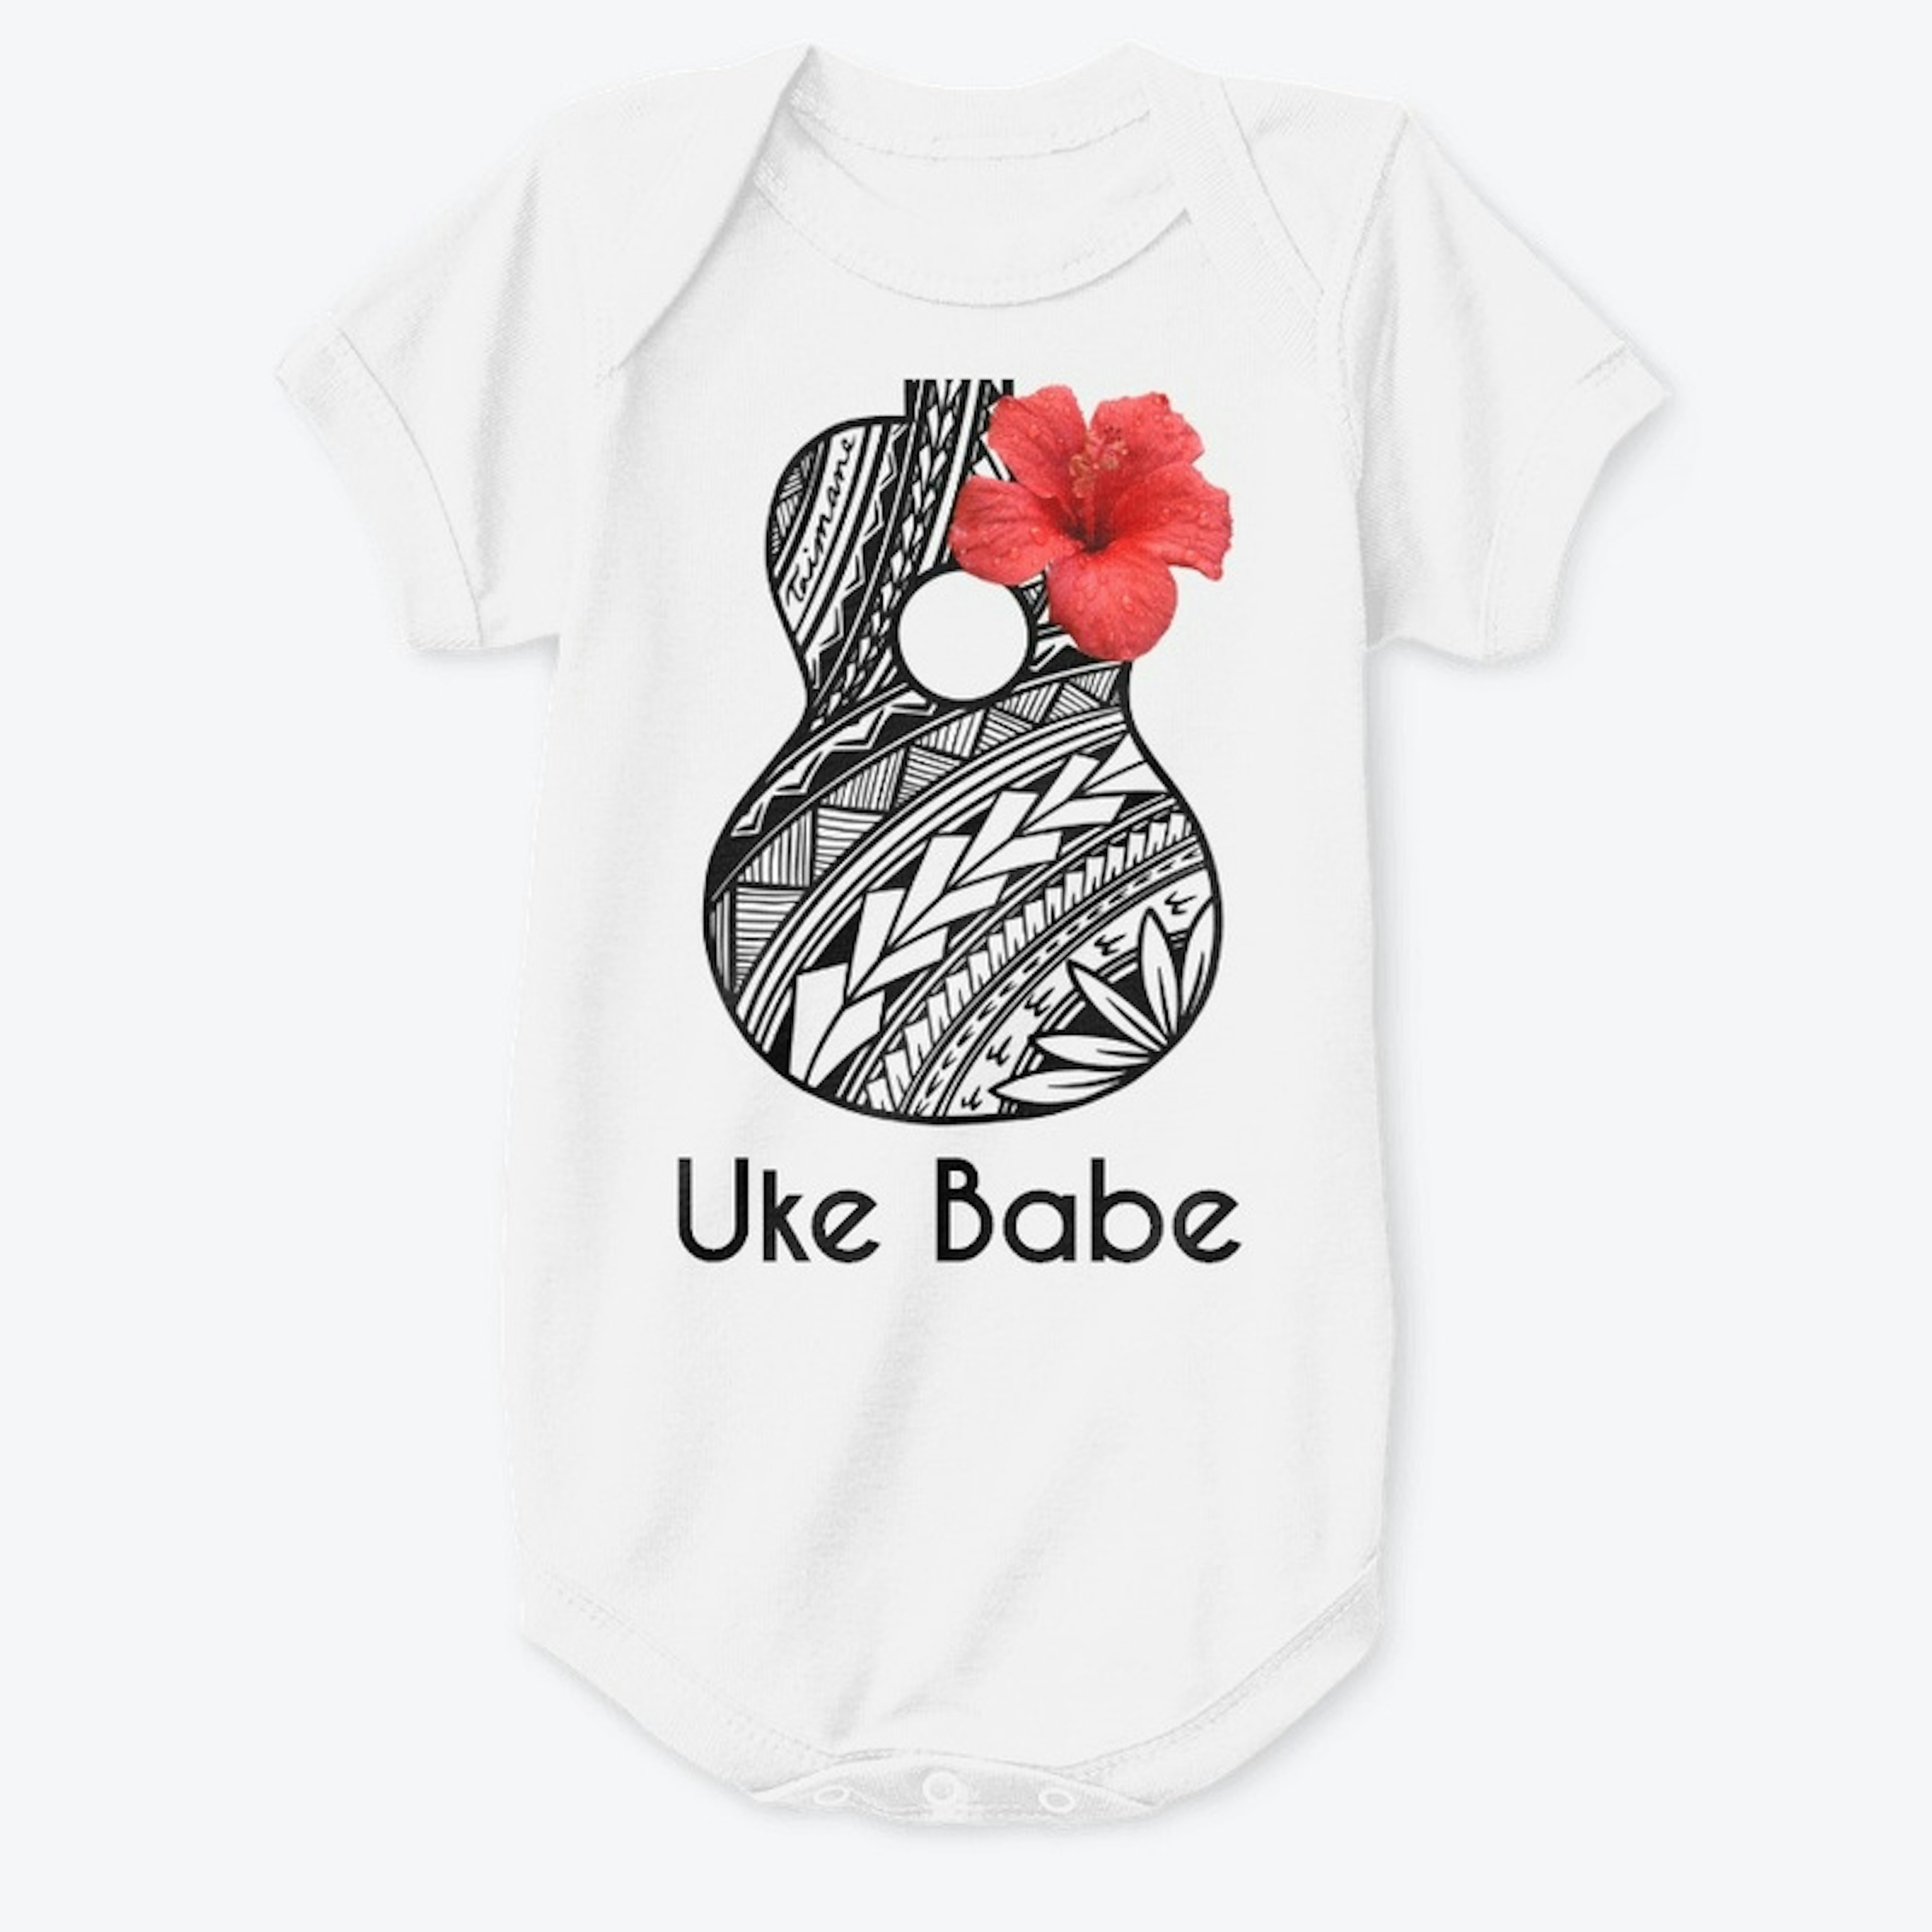 Polynesian Taimane "Uke Babe" Onesie 